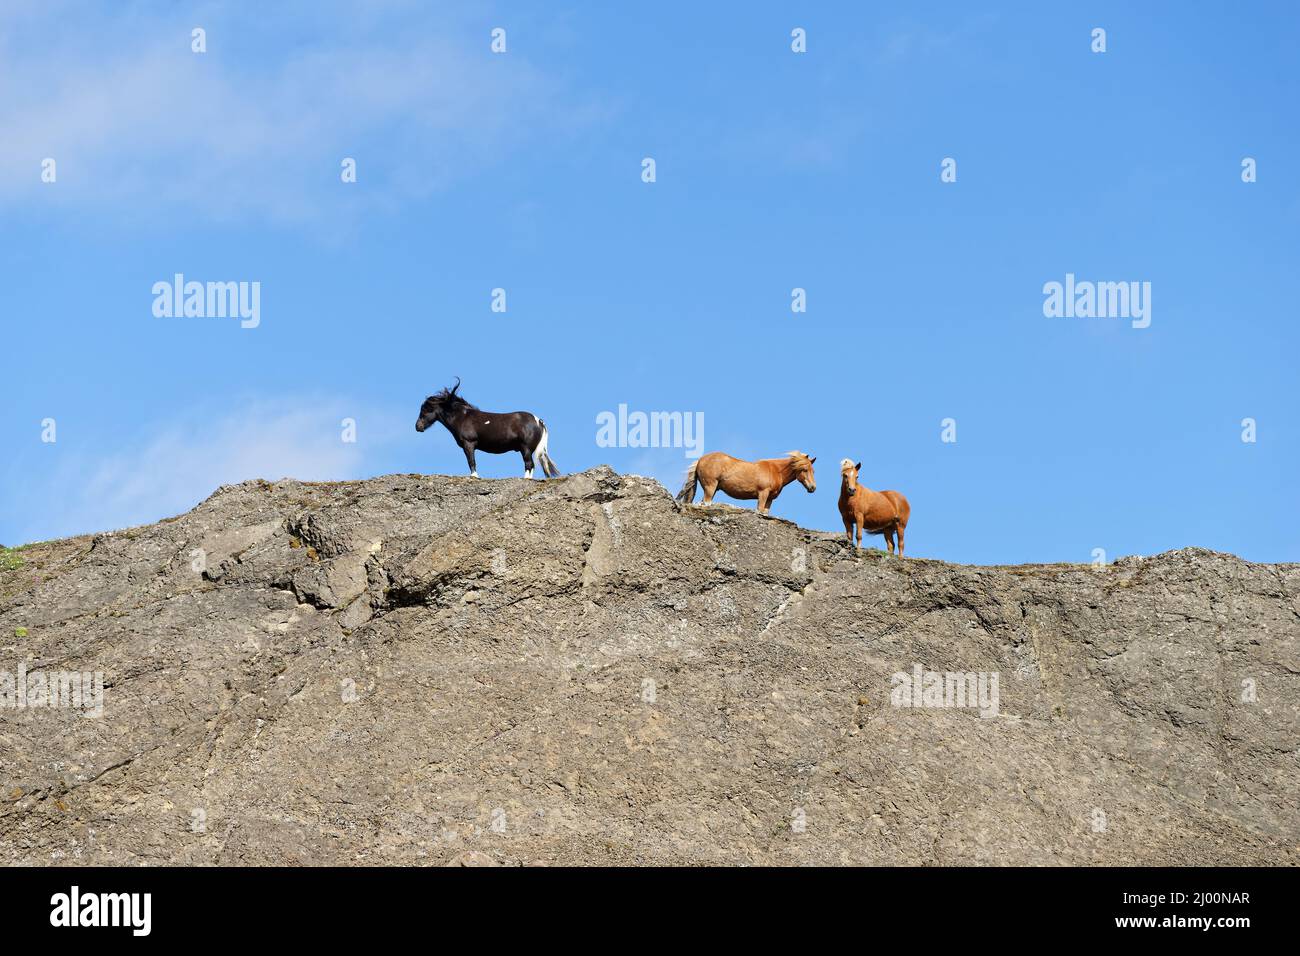 Gruppe von drei isländischen Pferden auf einem Felsen, von unten geschossen, über blauem Himmel mit wenigen Schleierwolken - Ort: Island Stockfoto